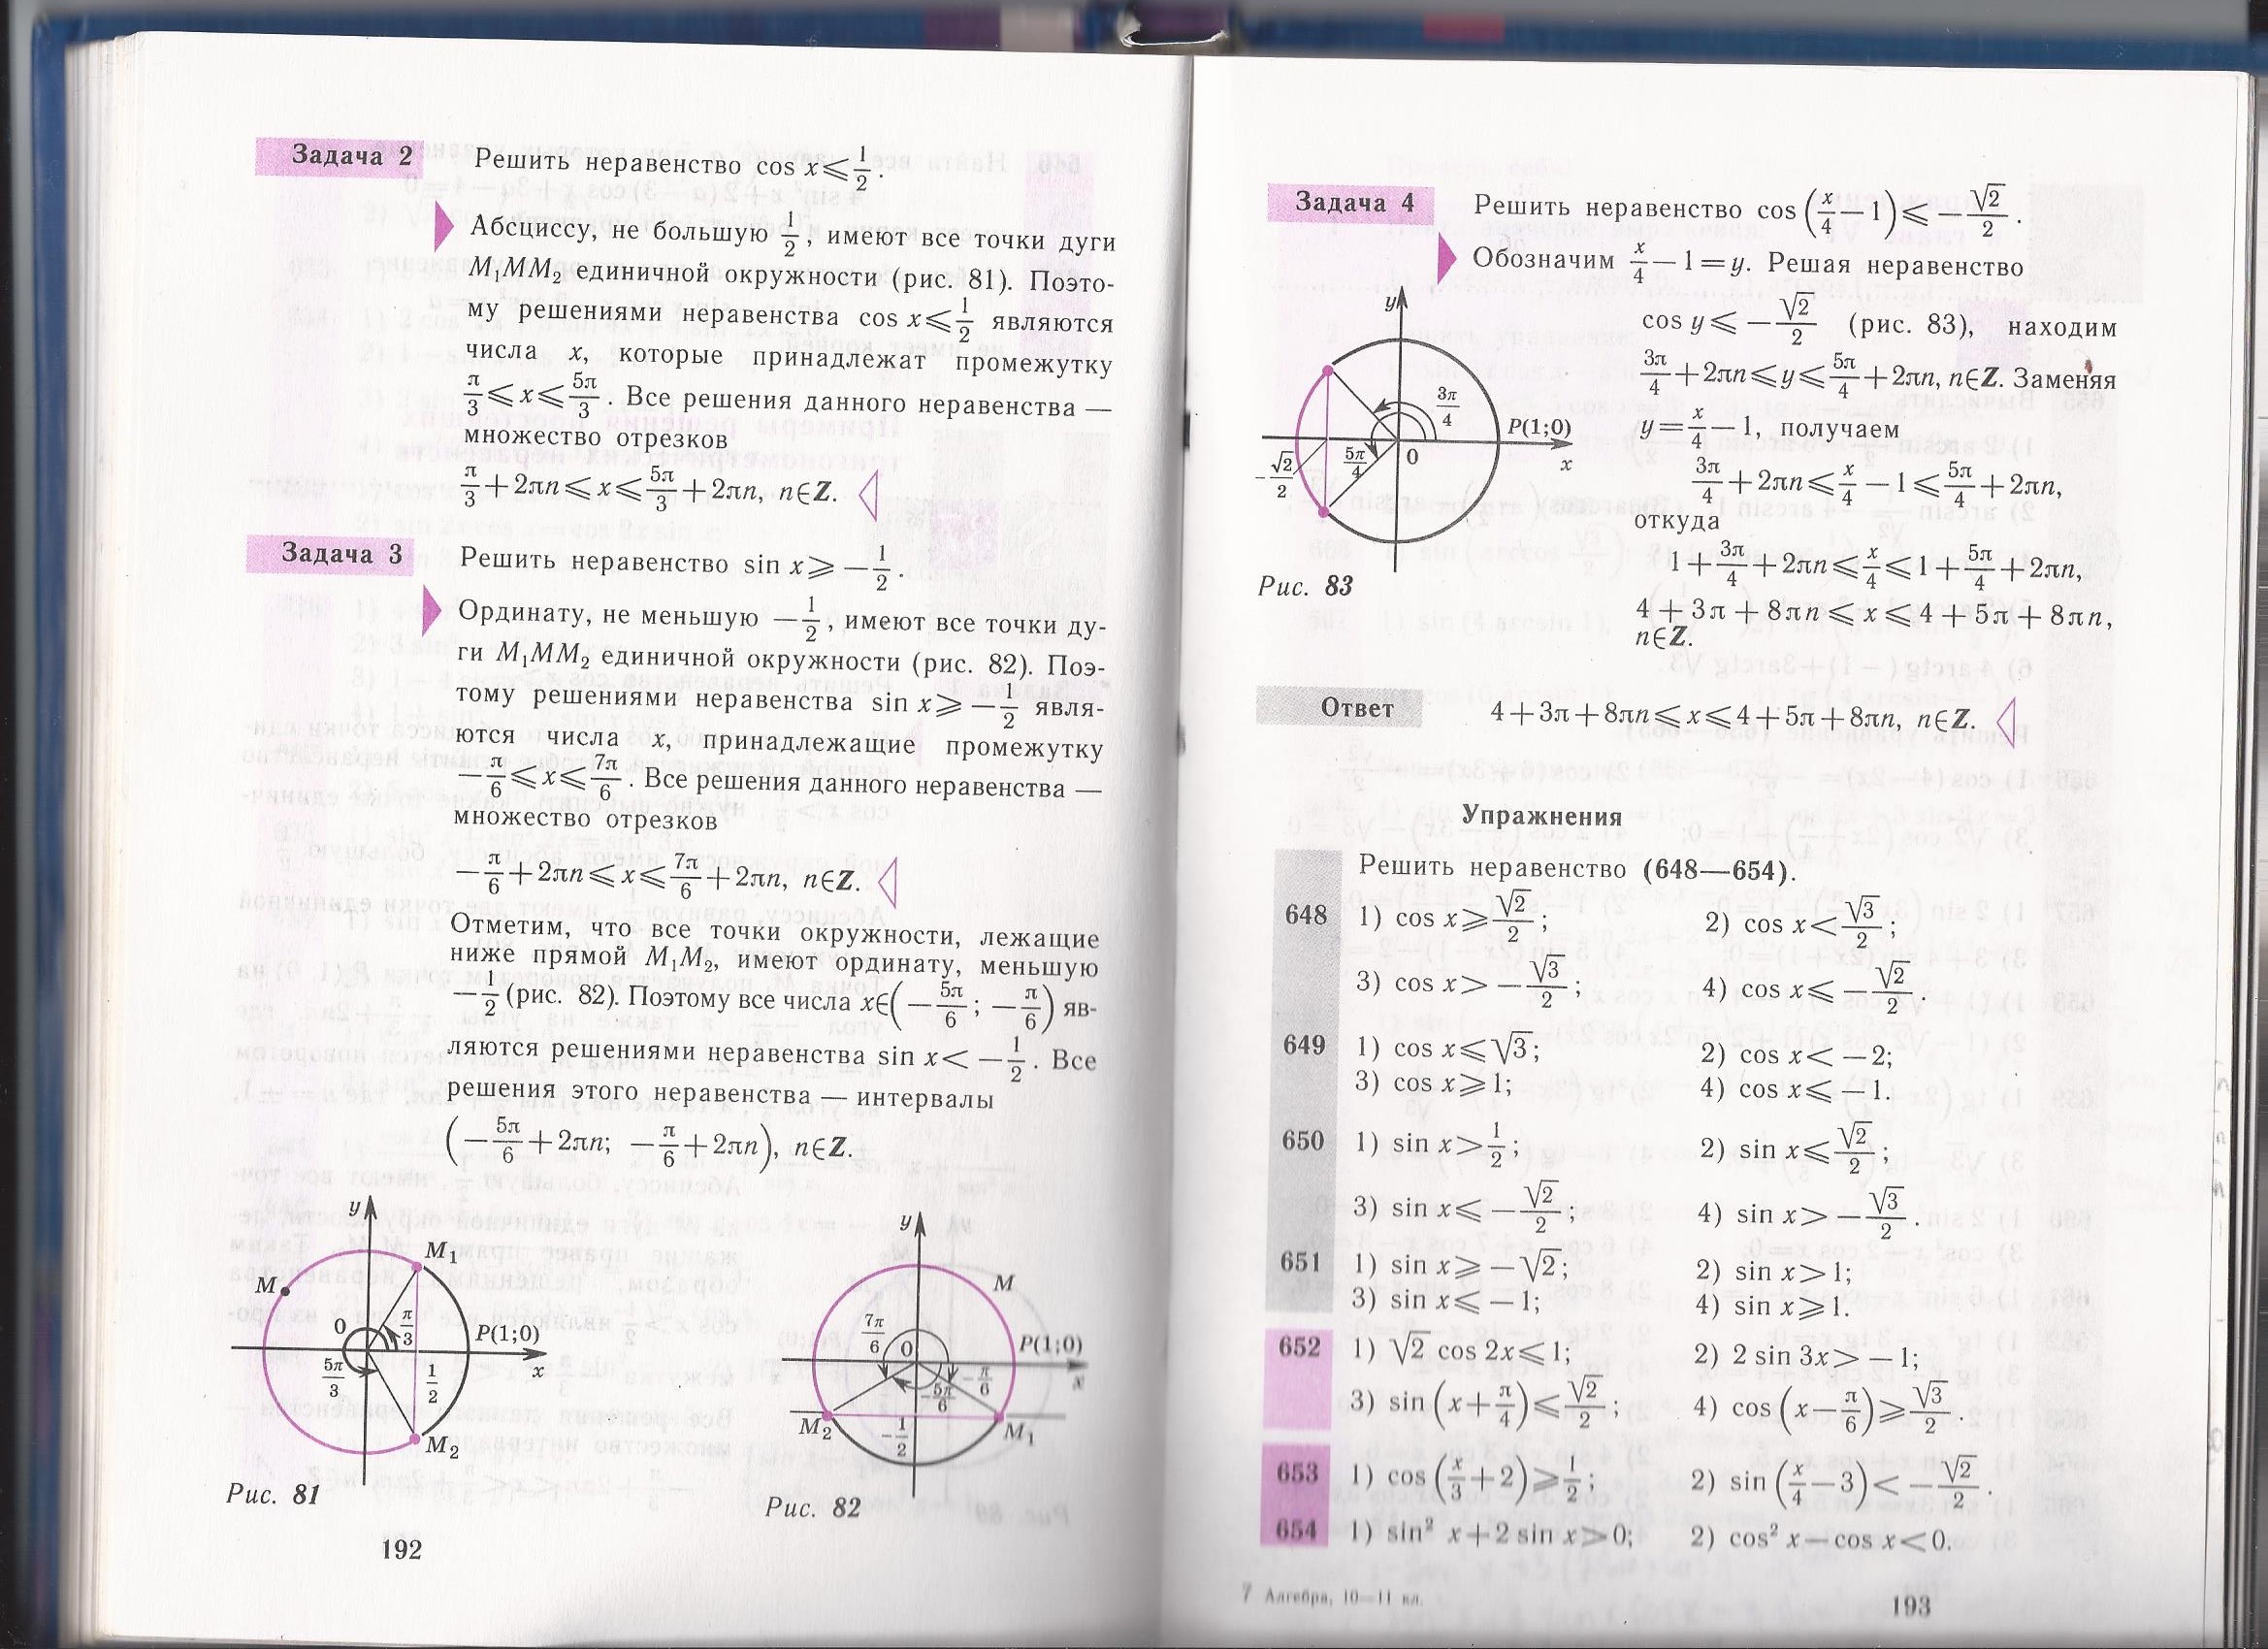 Практическия работа №8 по теме Тригонометрические уравнения для студентов 1 курса